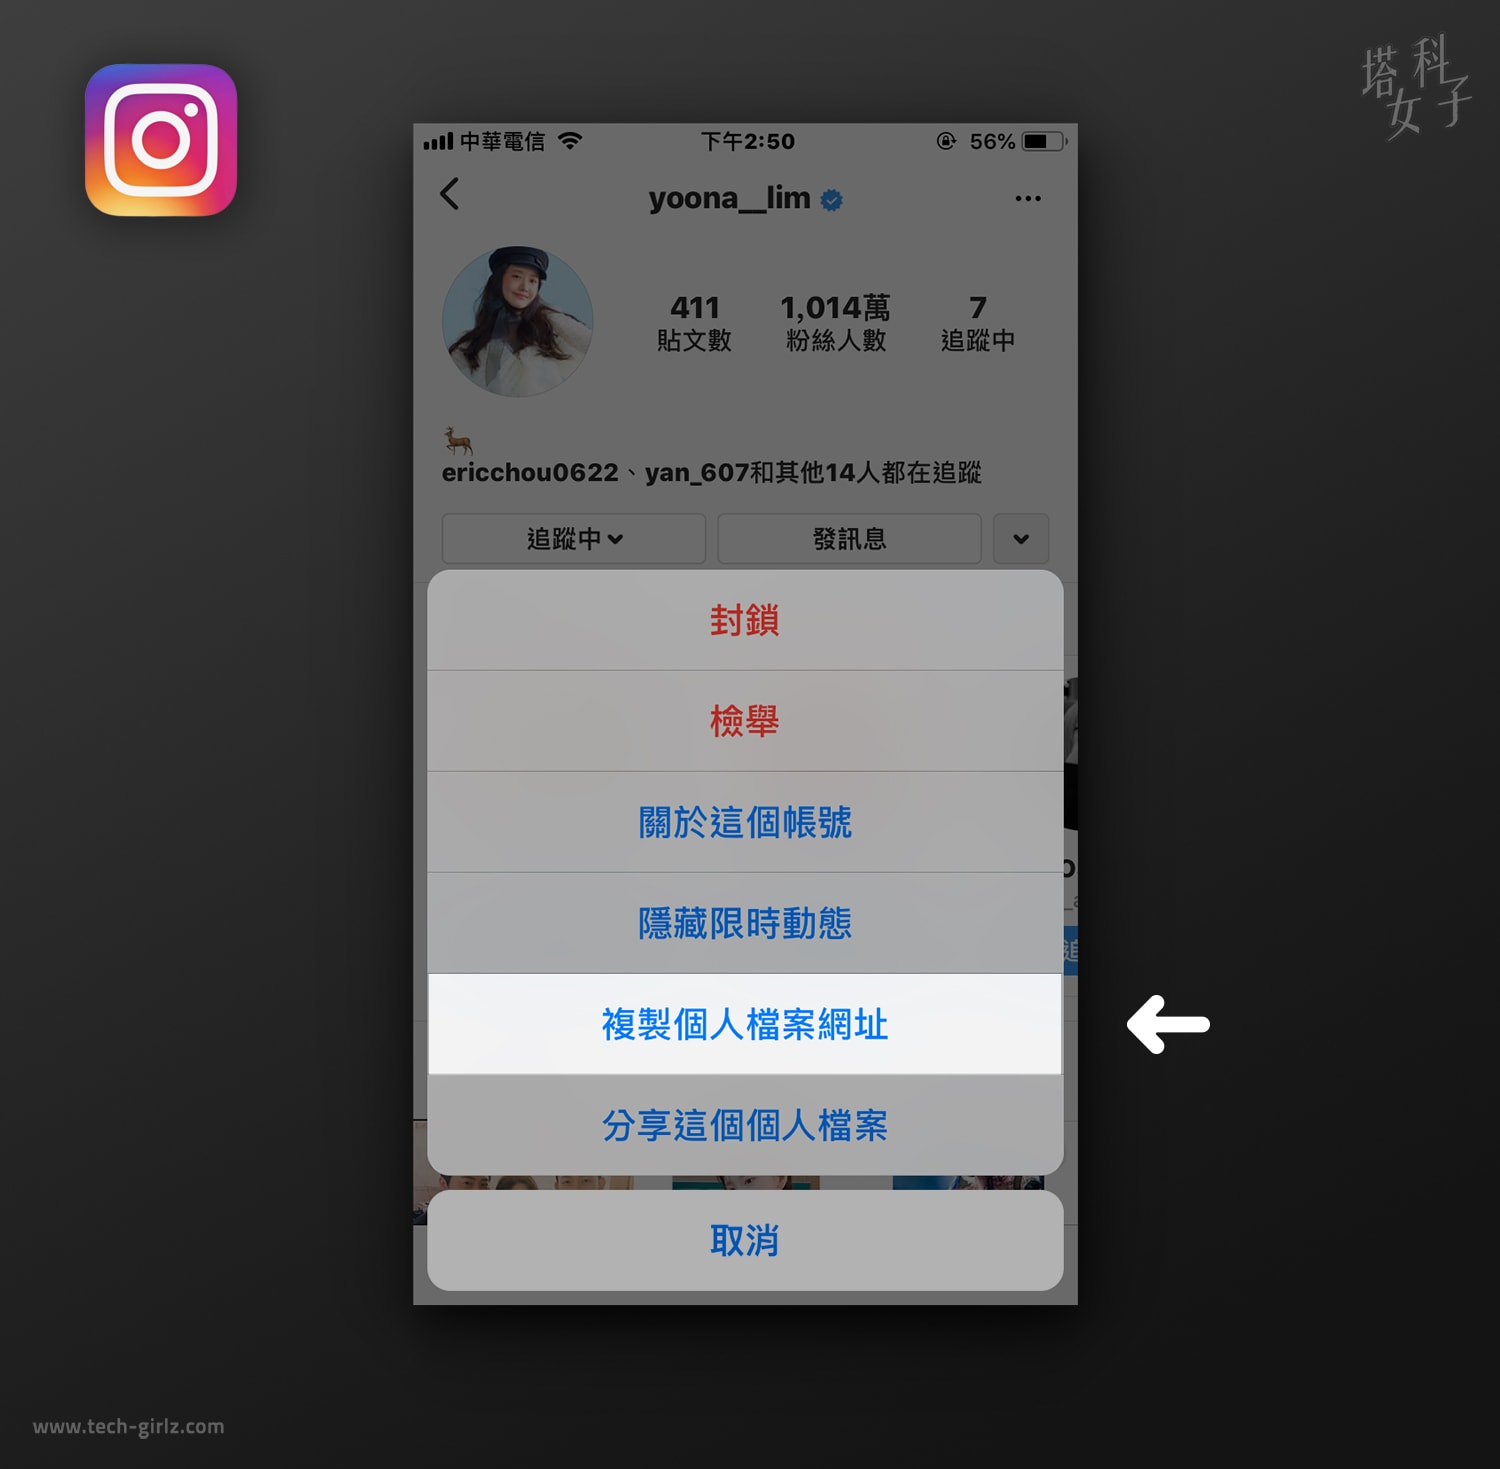 iOS 捷徑教學 - 下載 Instagram 大頭貼